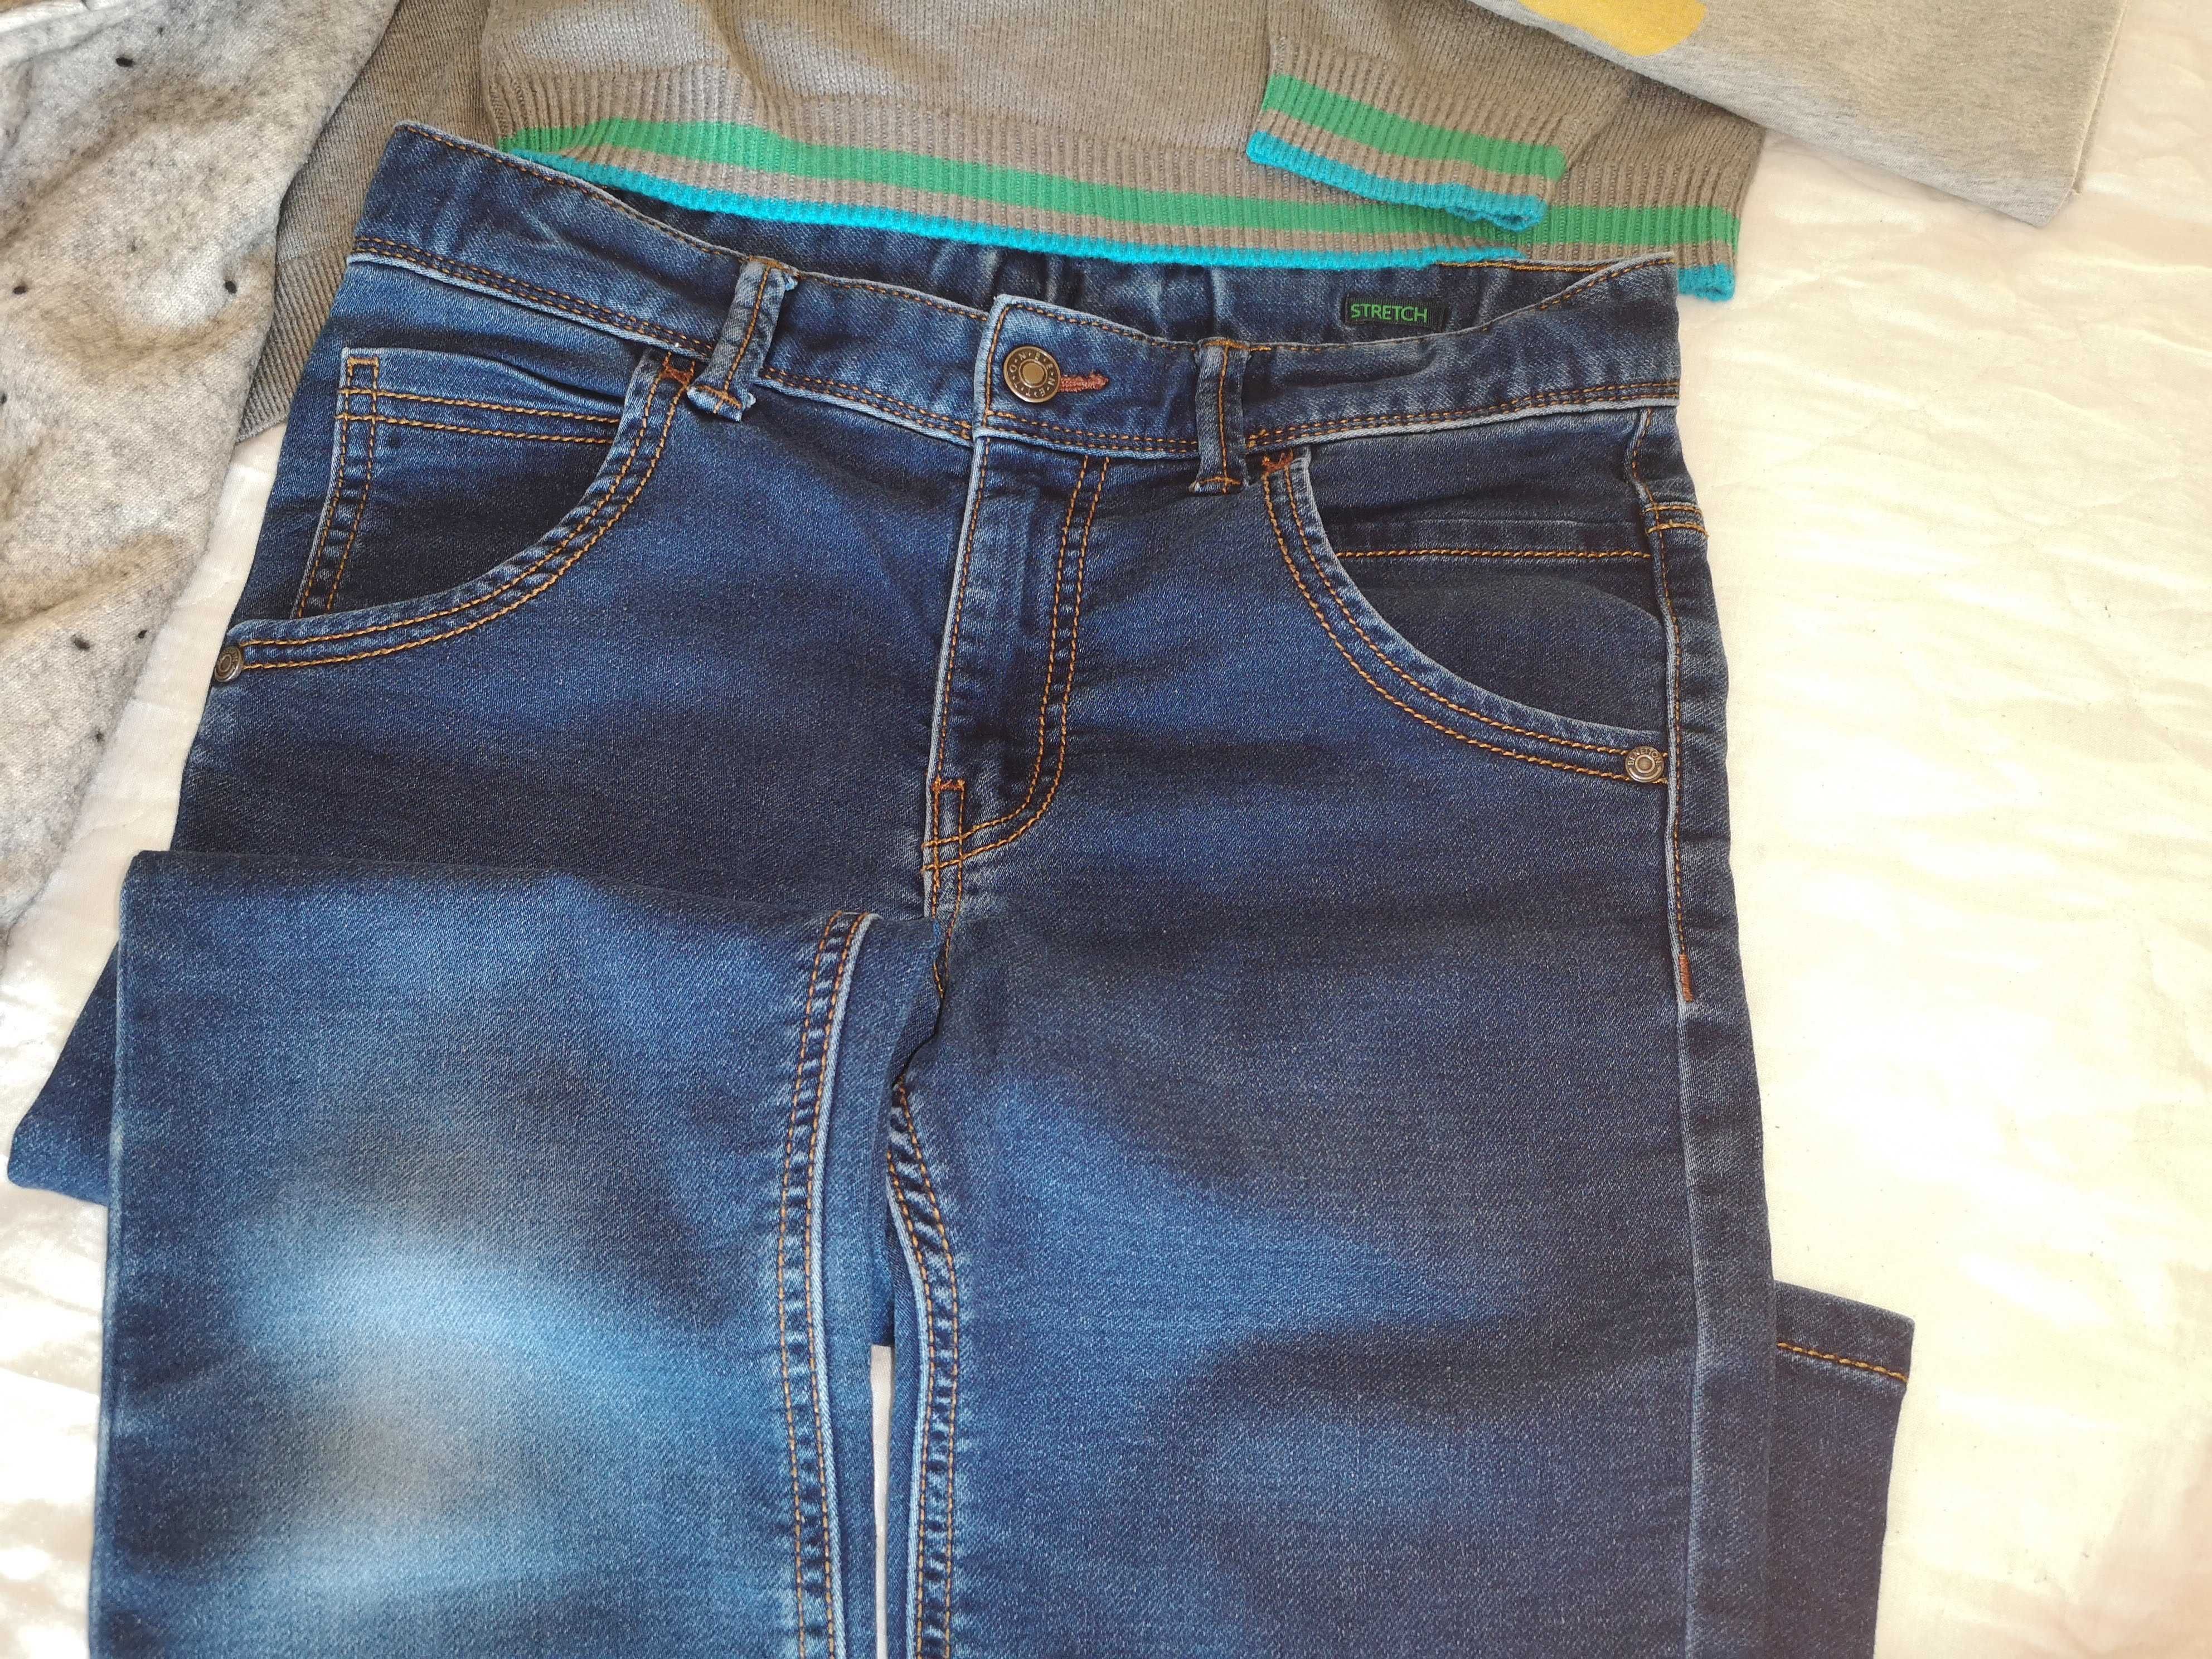 комплект одежды: брюки Benetton + кофты Armani 3шт + реглан в подарок